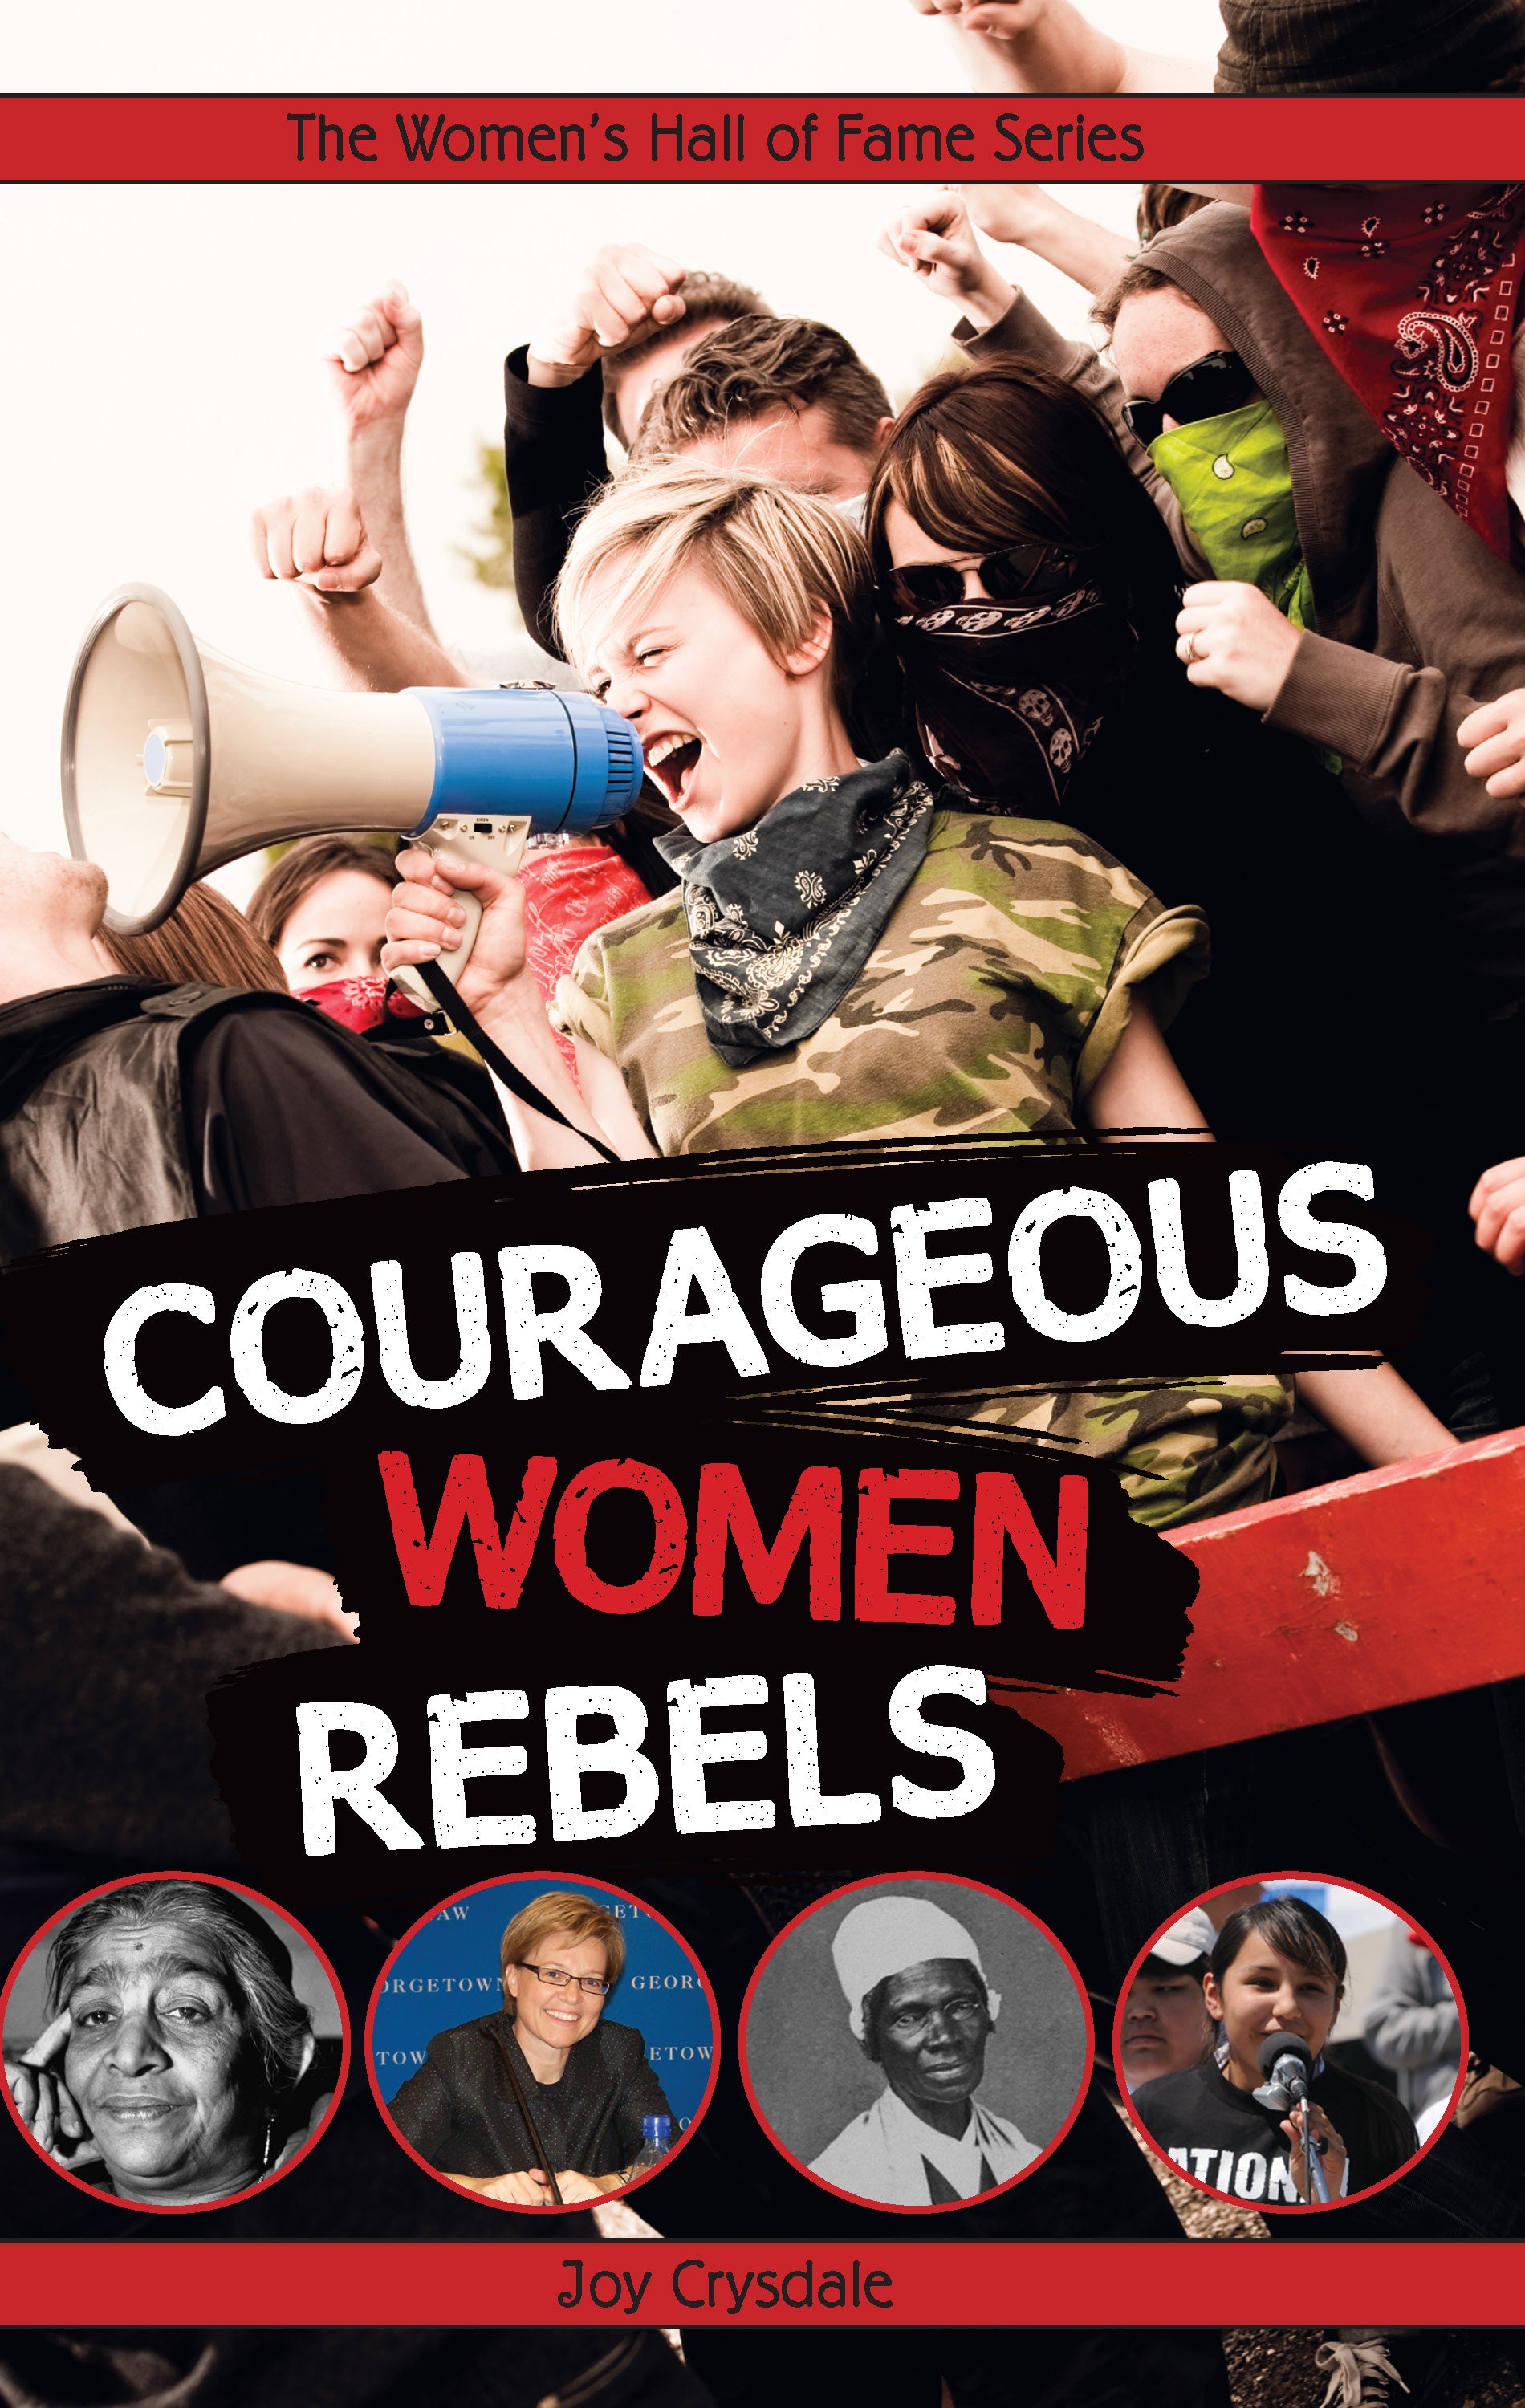 Courageous Women Rebels